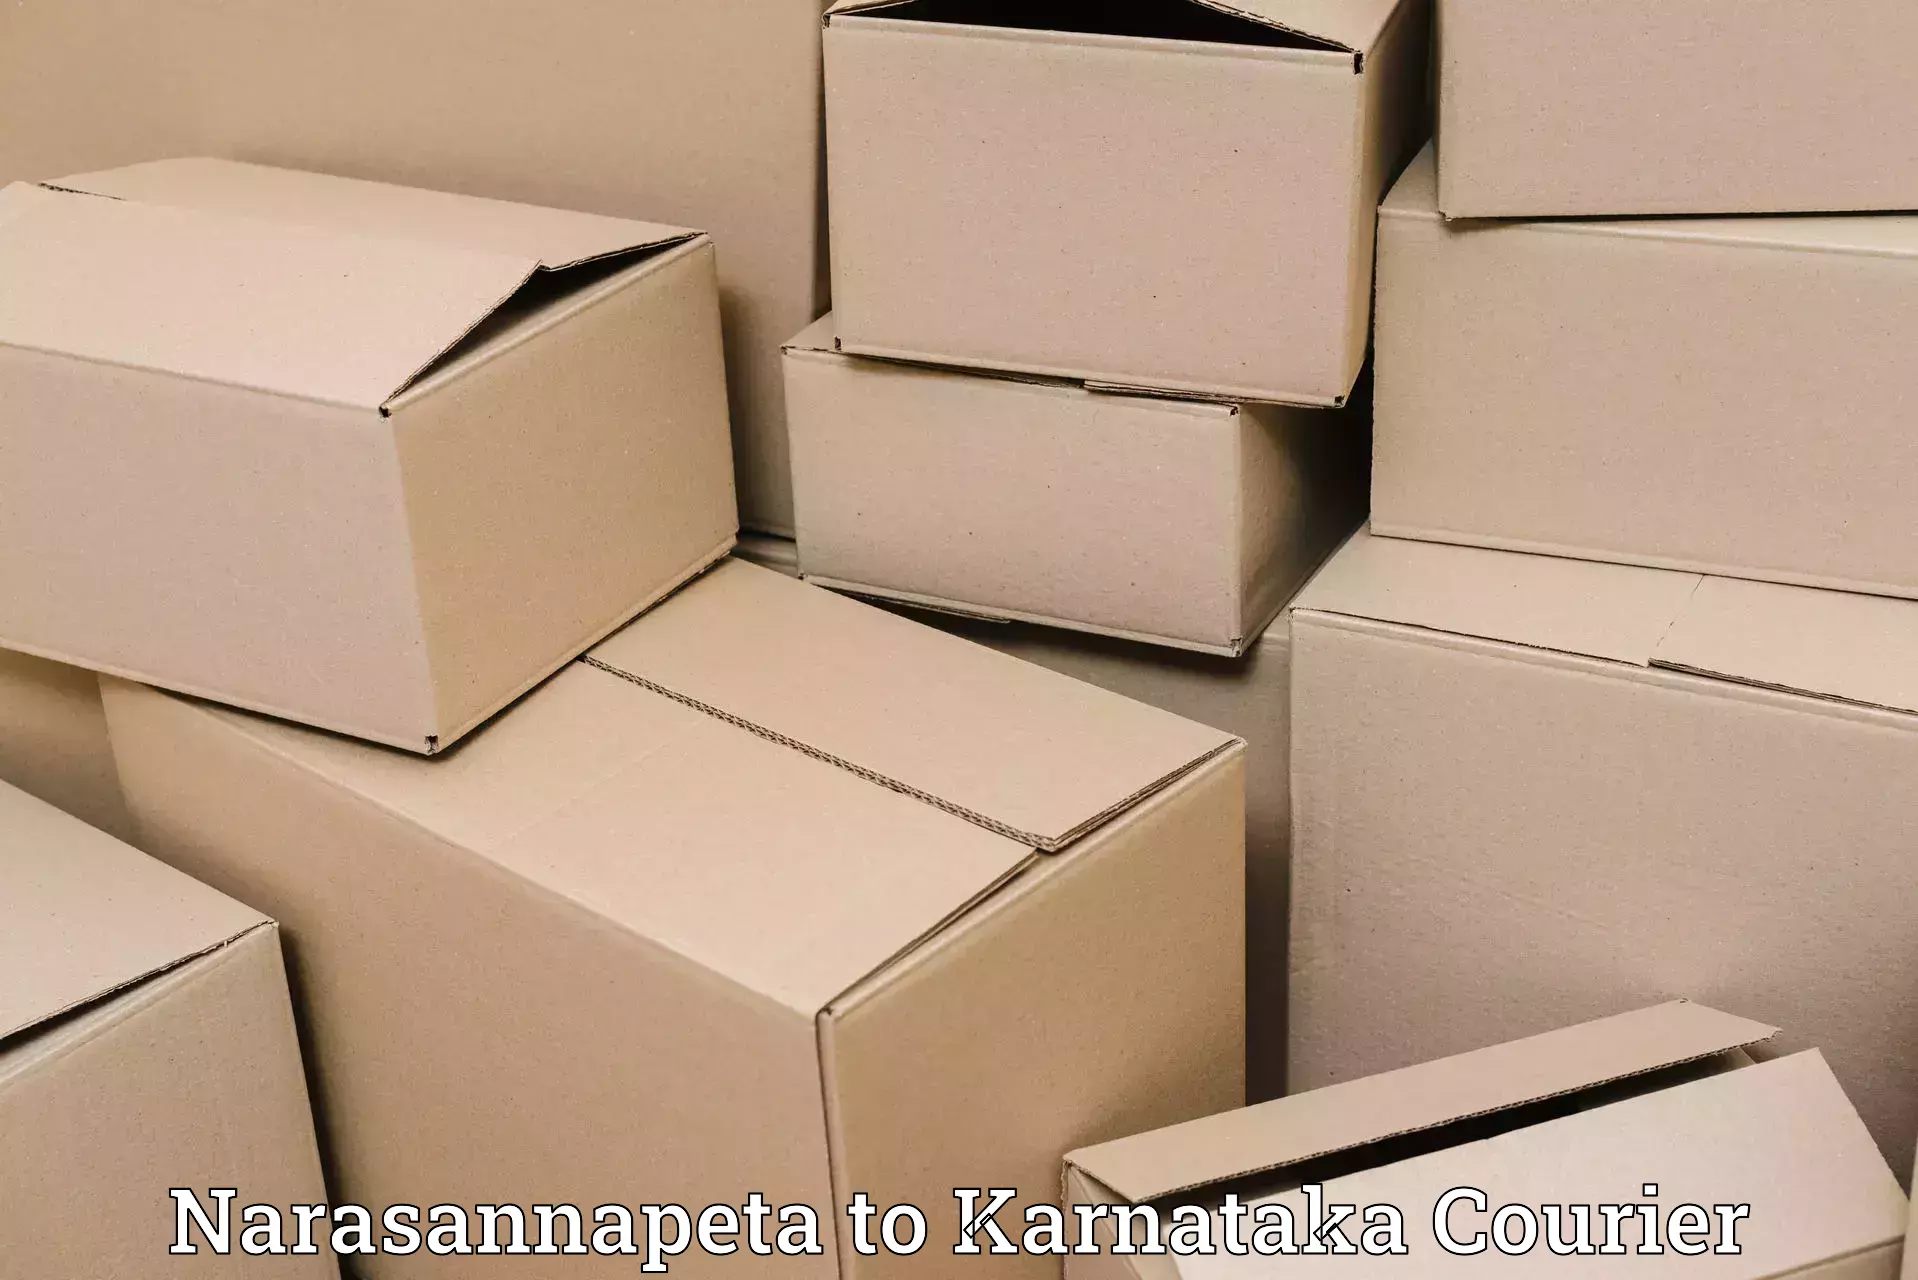 Efficient parcel transport Narasannapeta to Gangavathi